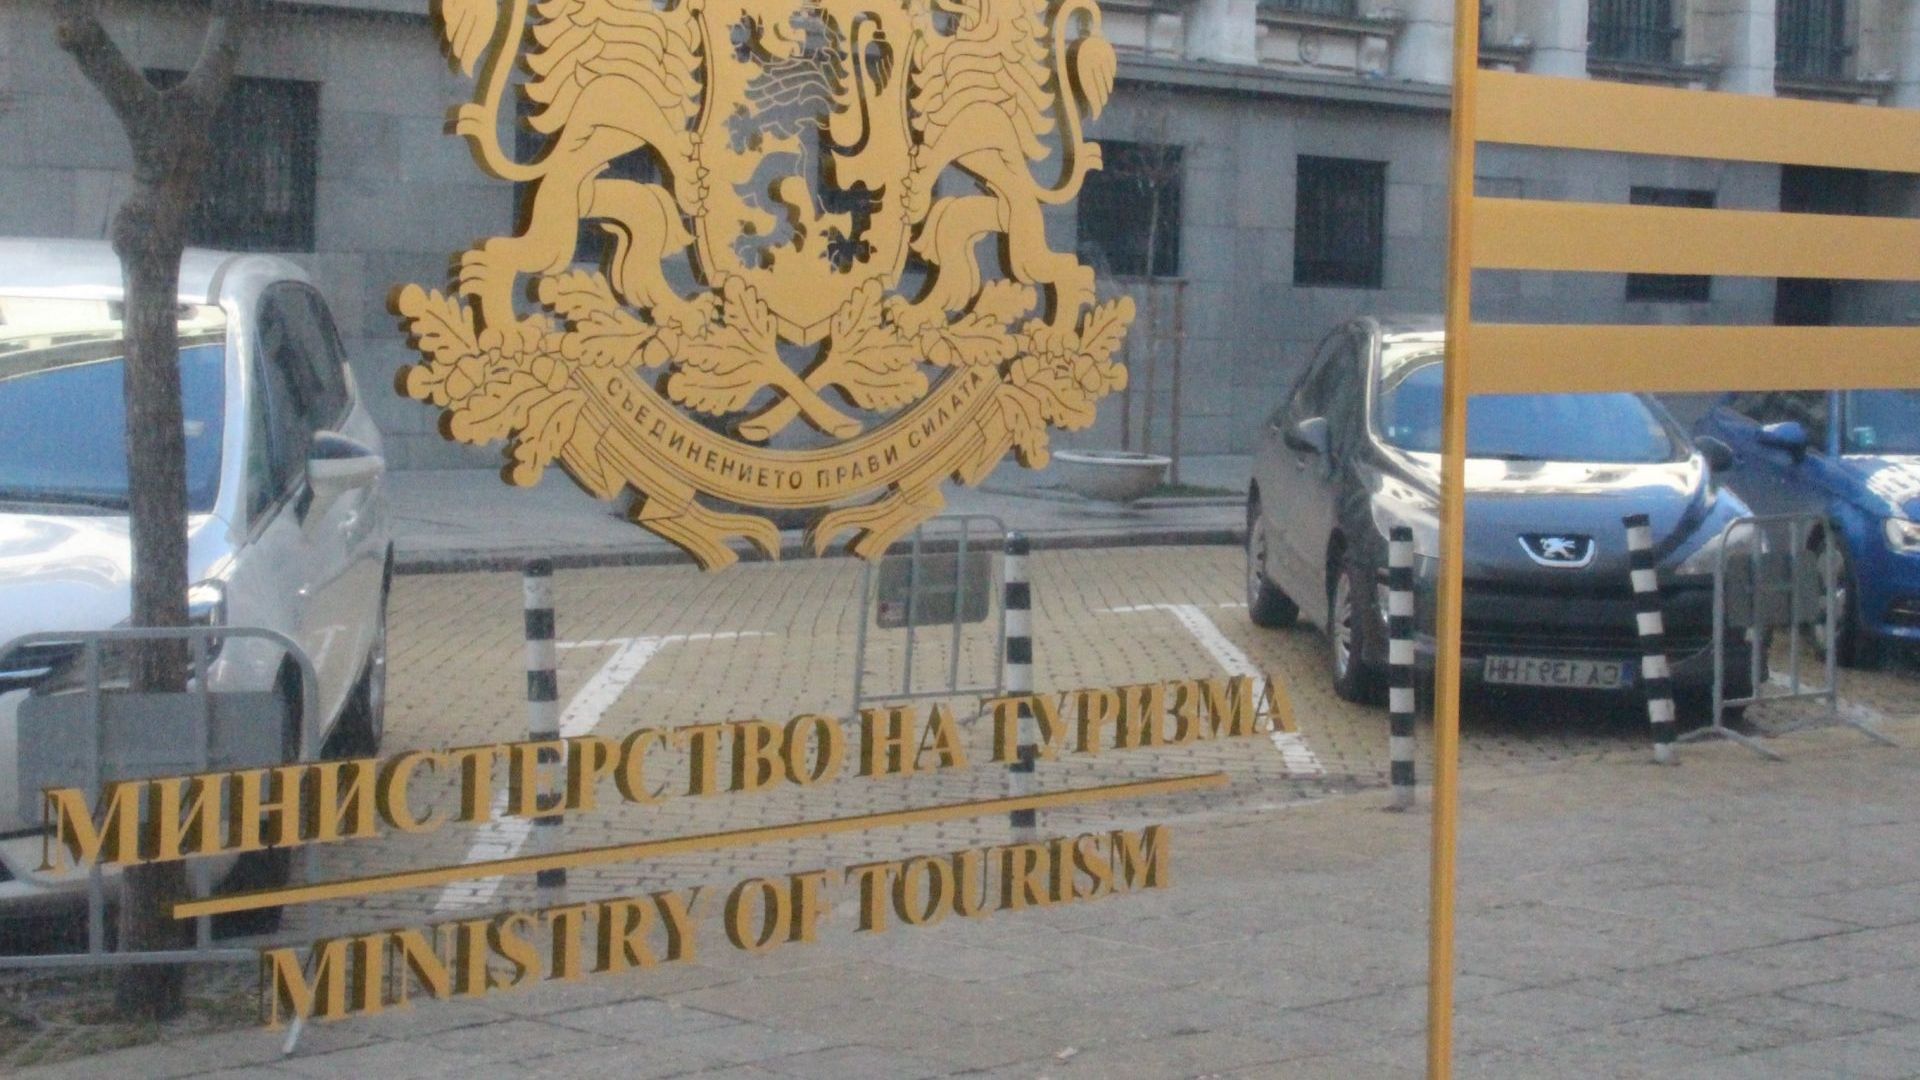 Започна онлайн кампанията в подкрепа на туризма "Резервирай в България"